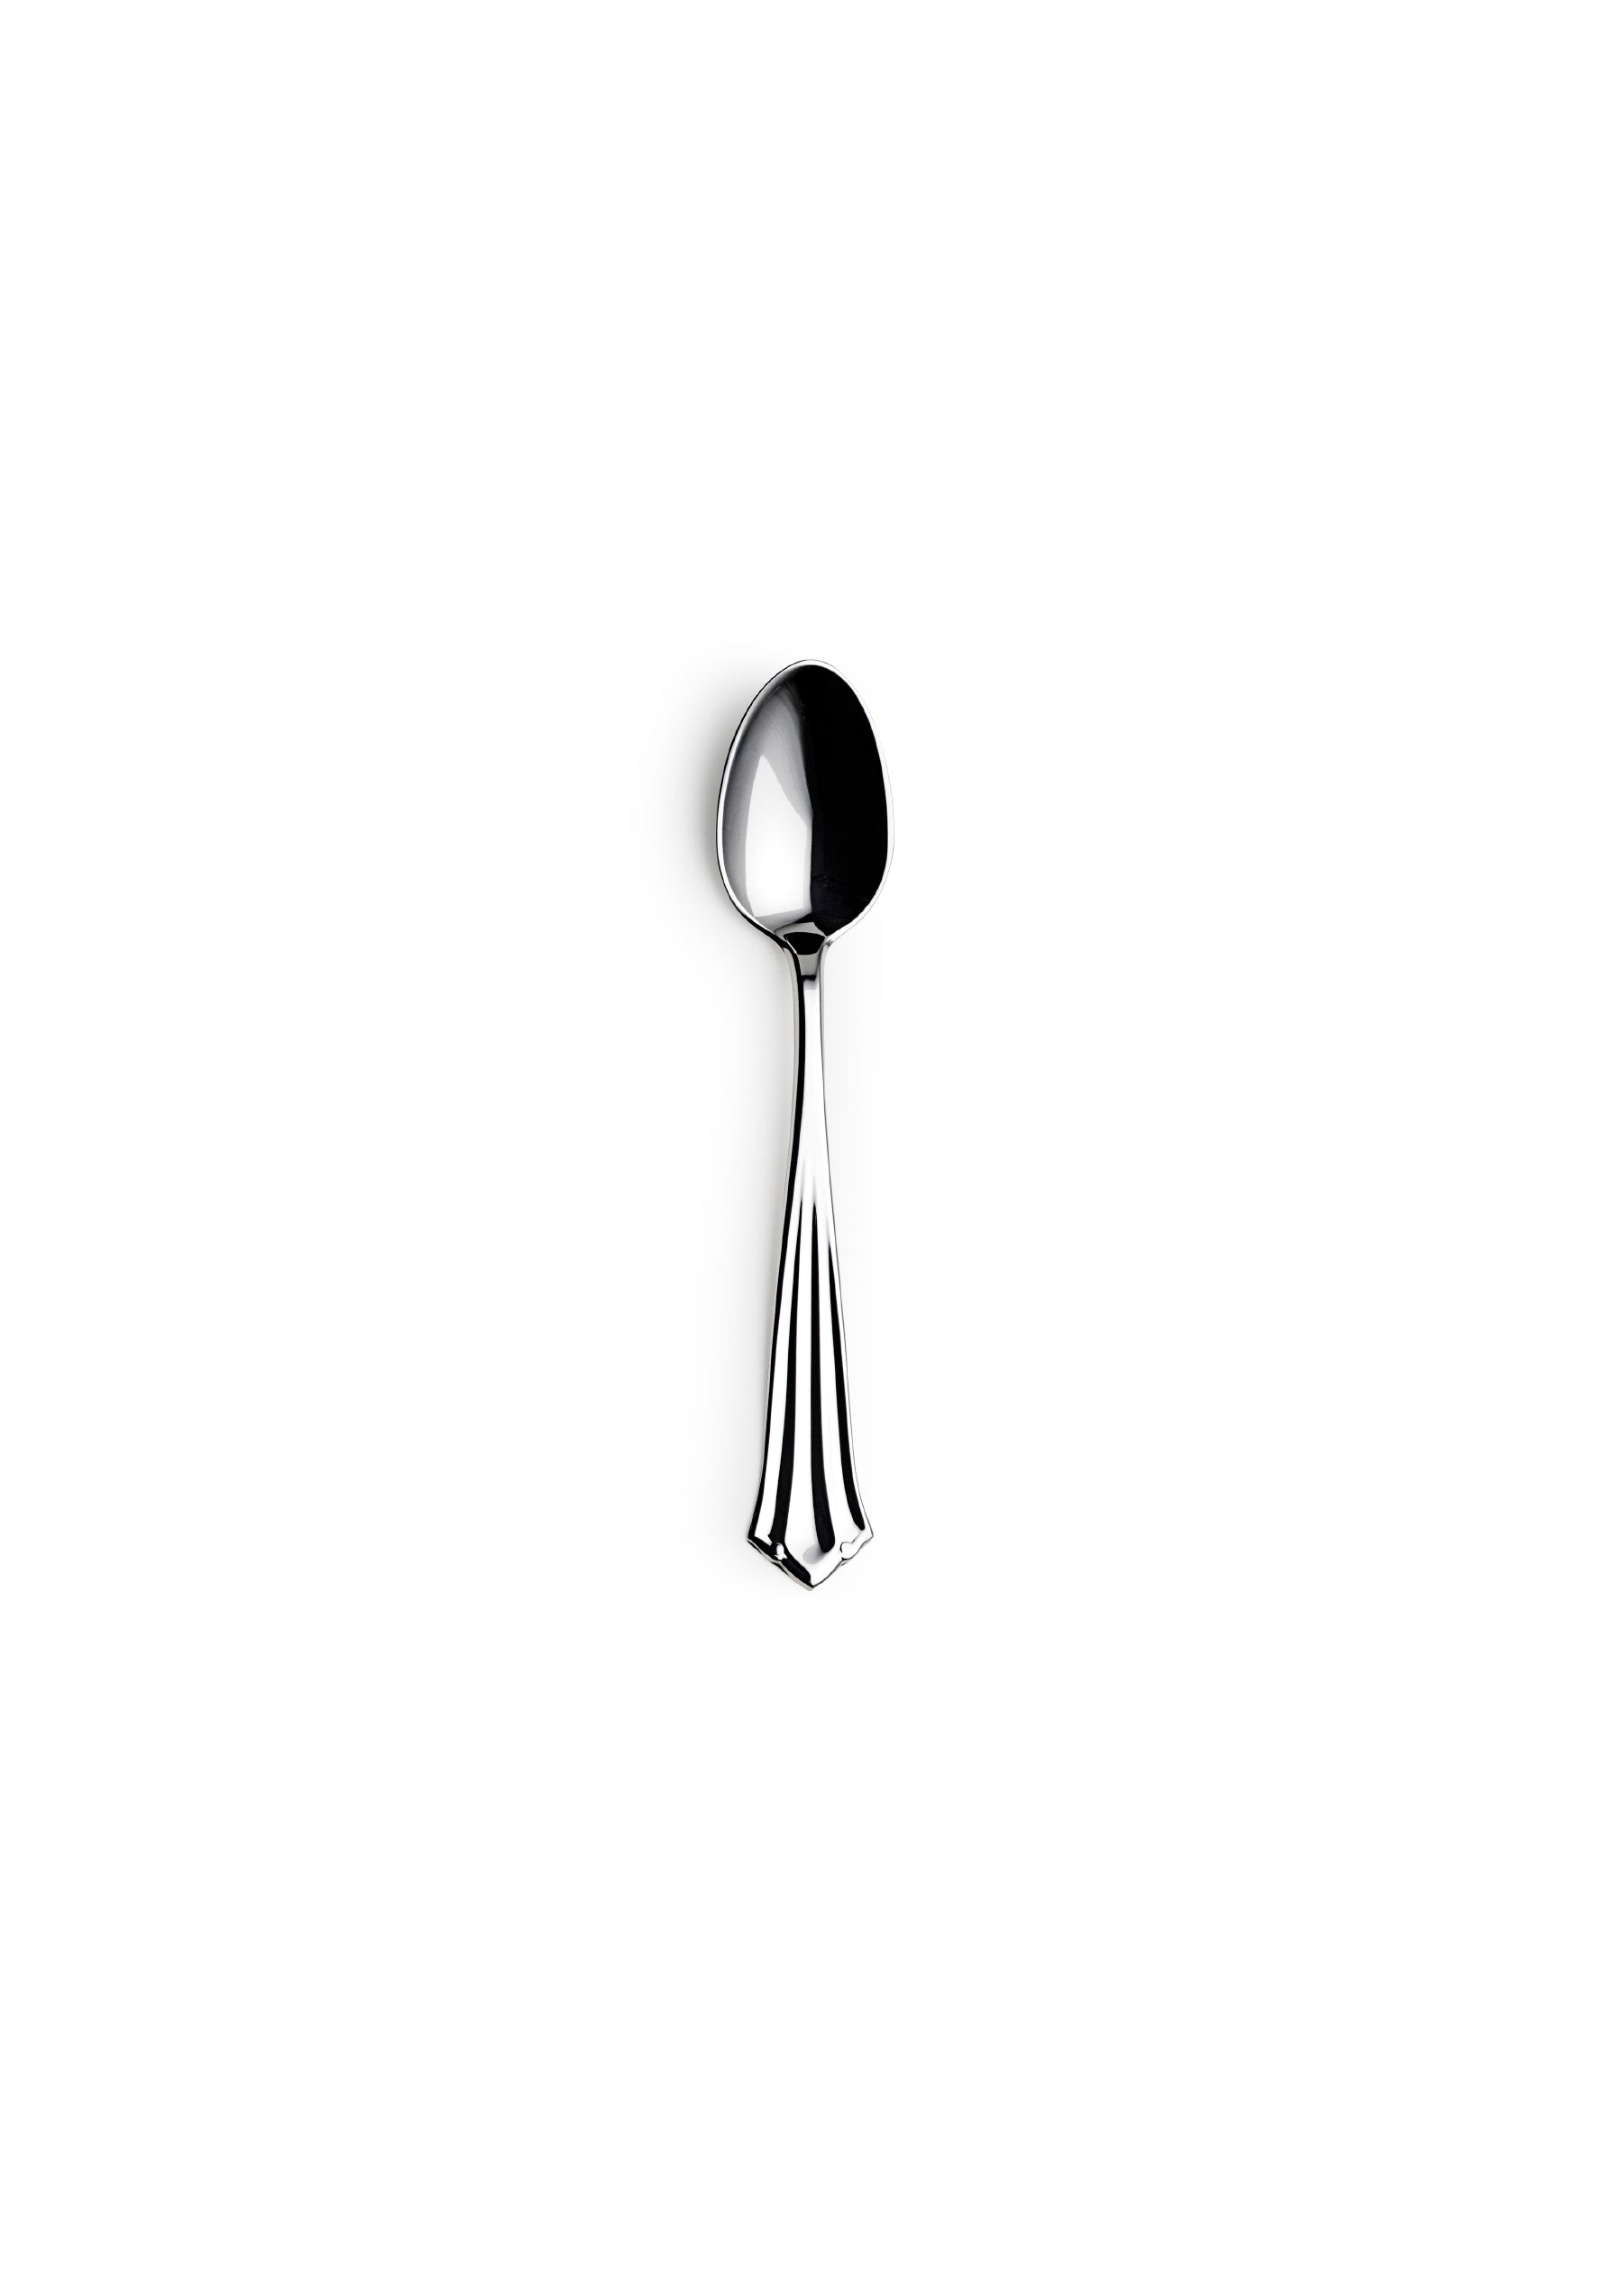 Princess teaspoon